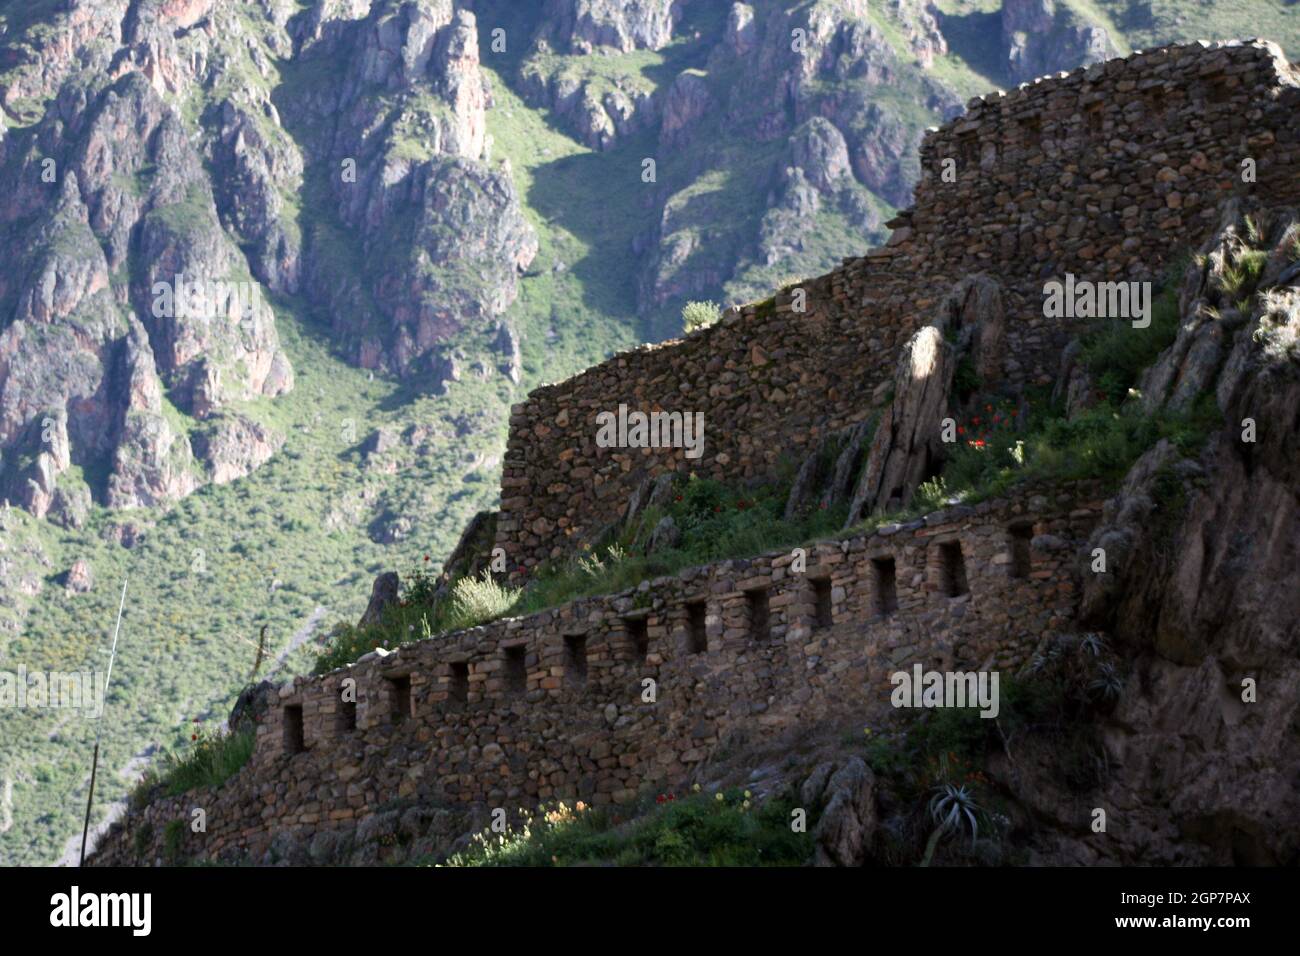 Incan ruins at Ollantaytambo in the Sacred Valley, Peru Stock Photo